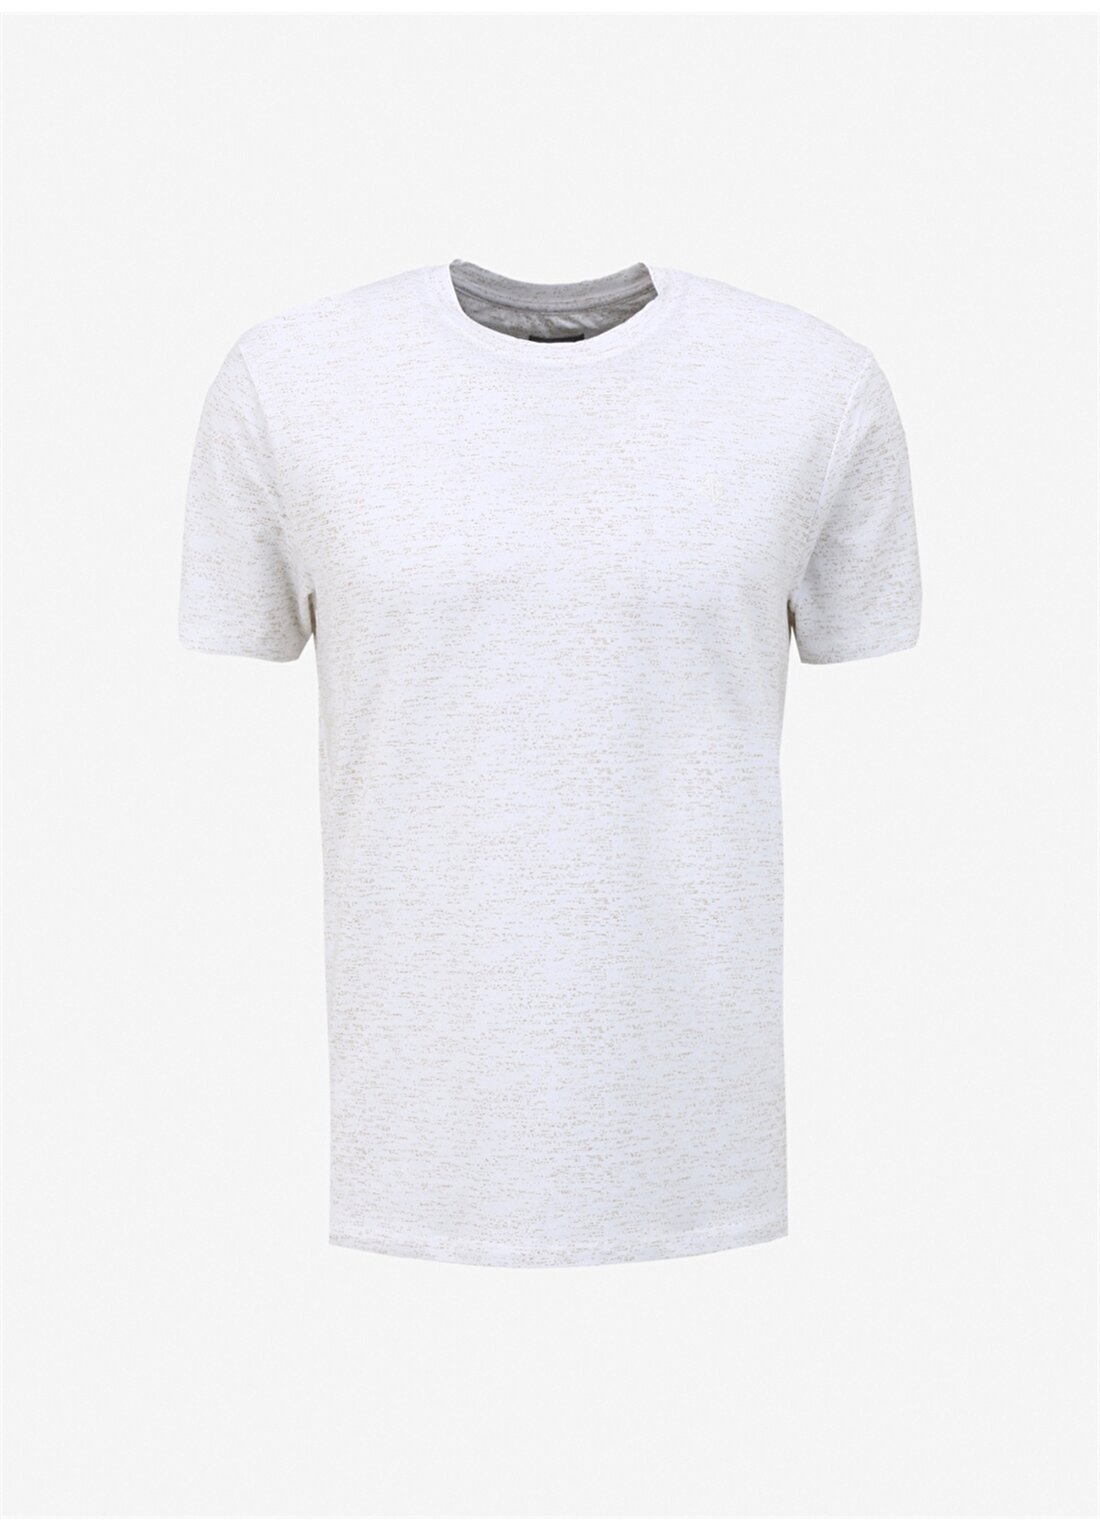 Beymen Business Beyaz Erkek T-Shirt 4B4824200047